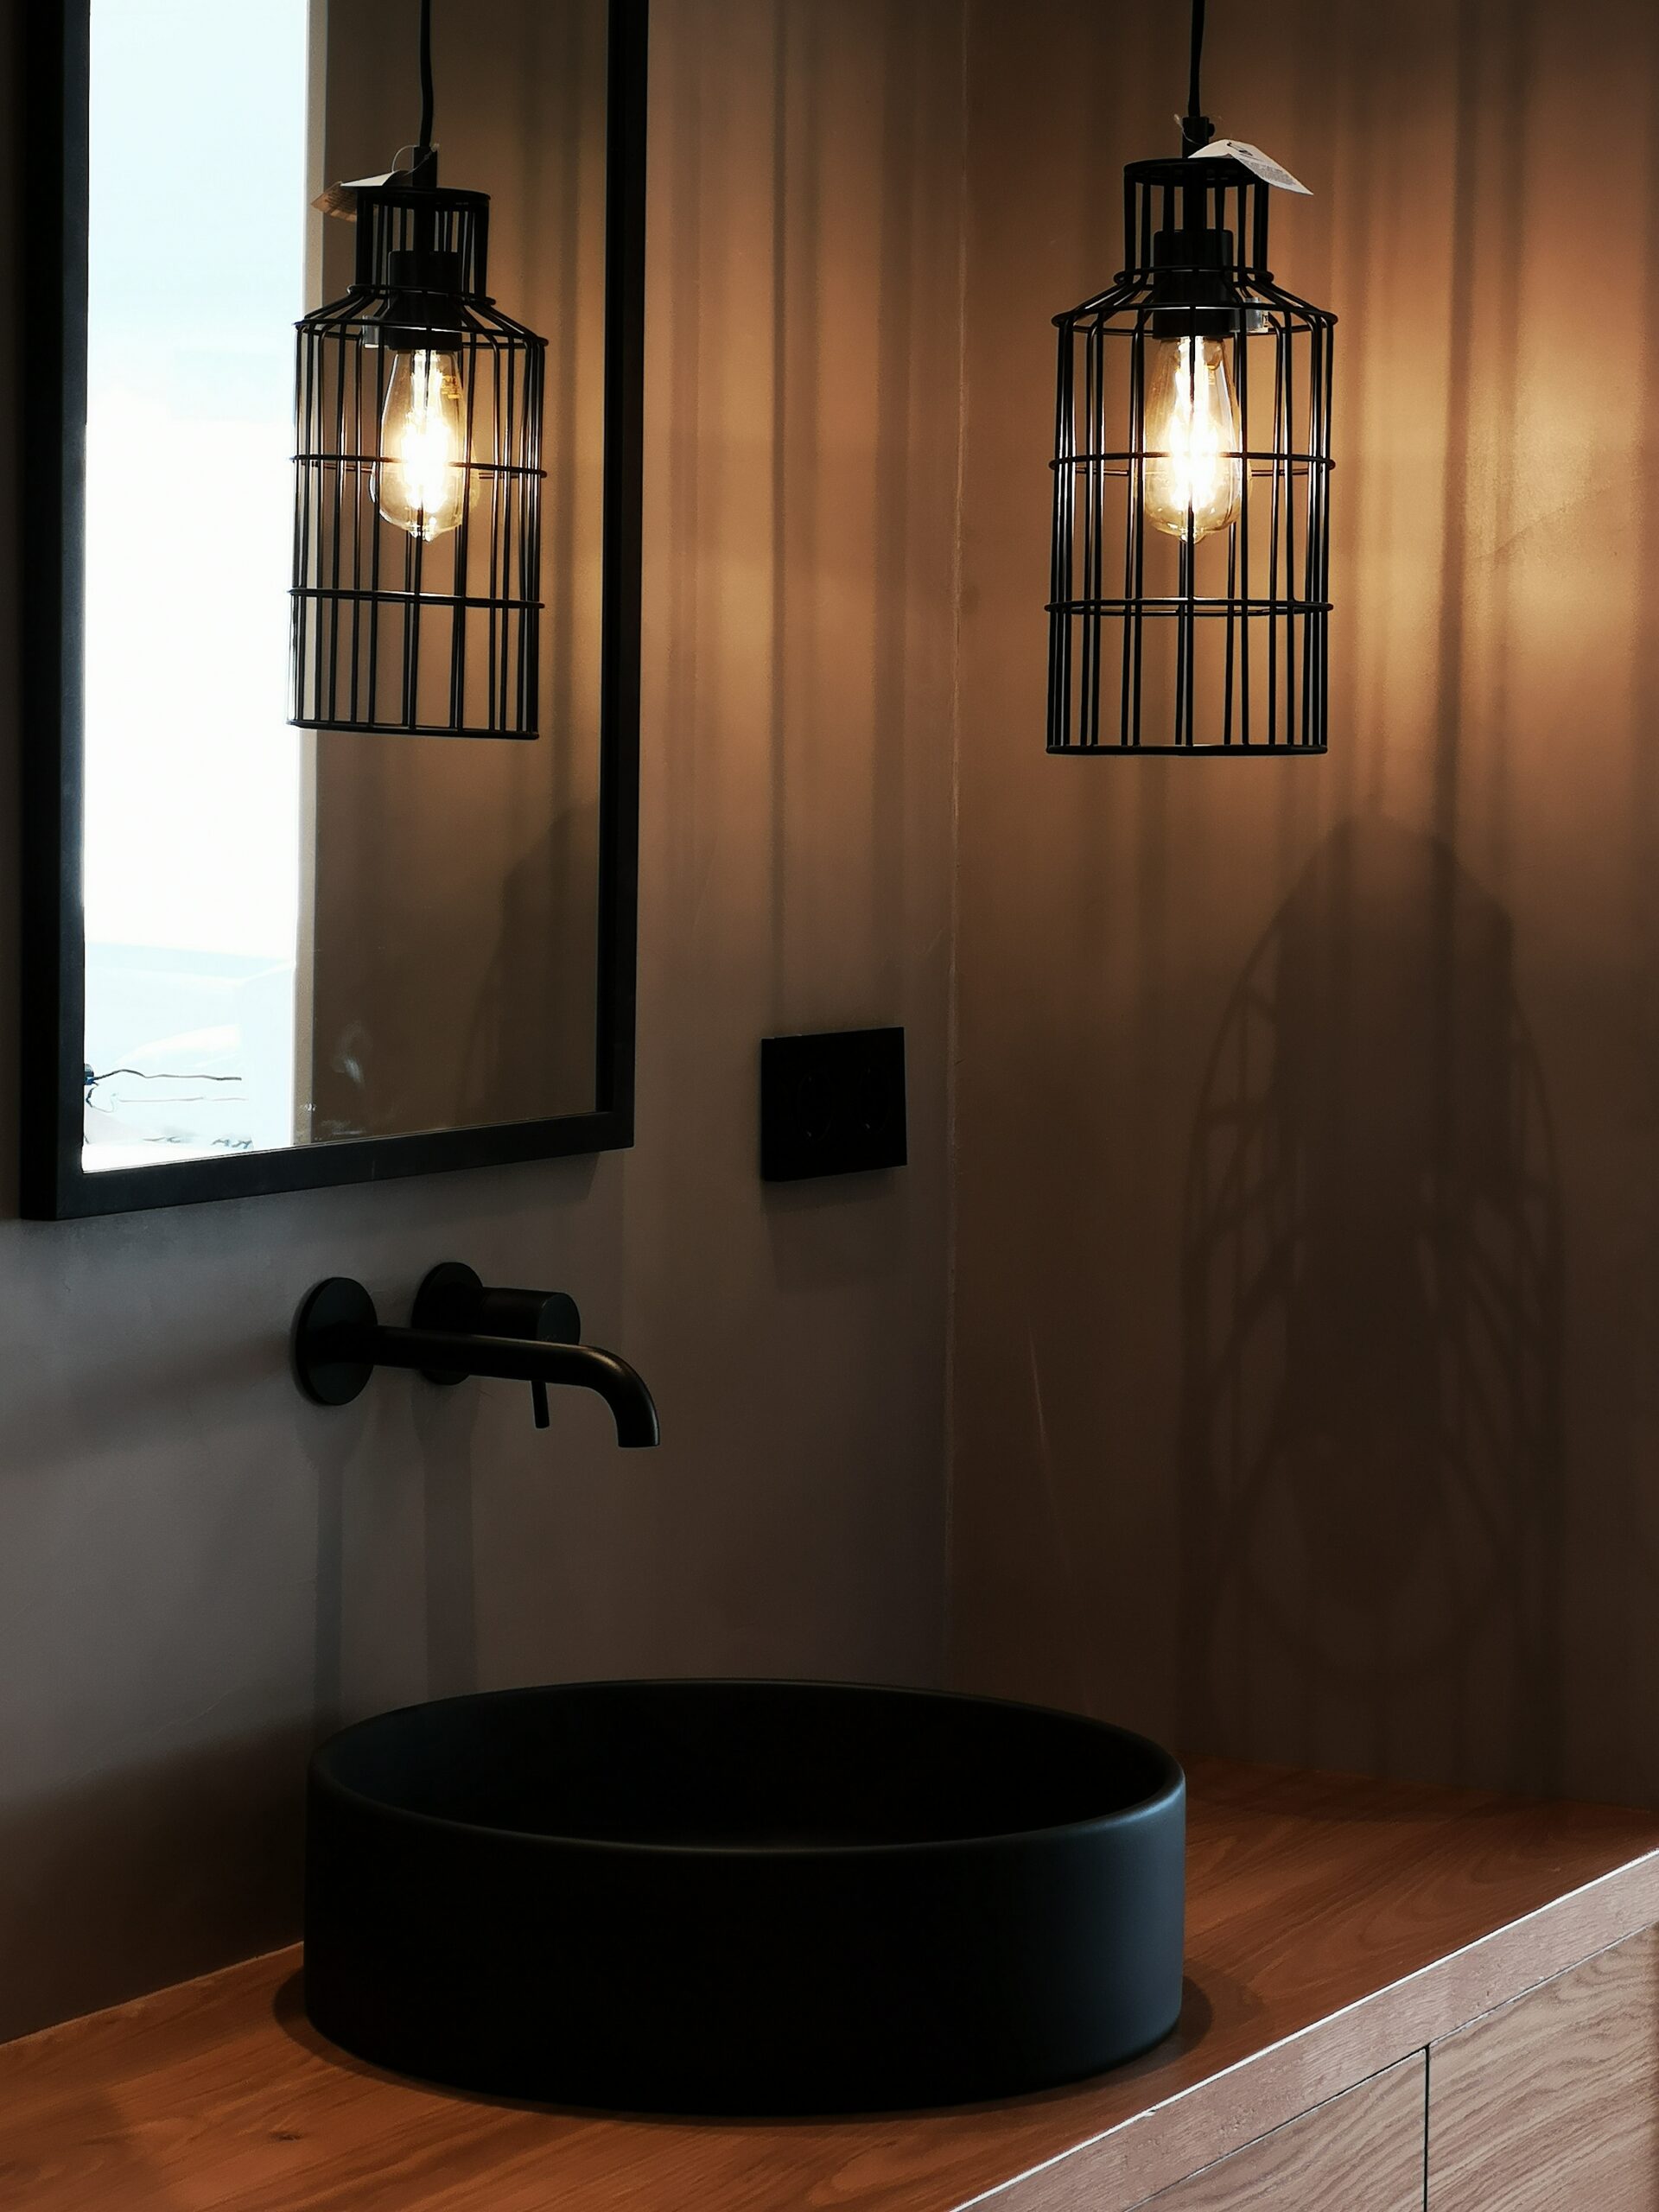 Detalle lavabo con griferia y lampara colgante en negro